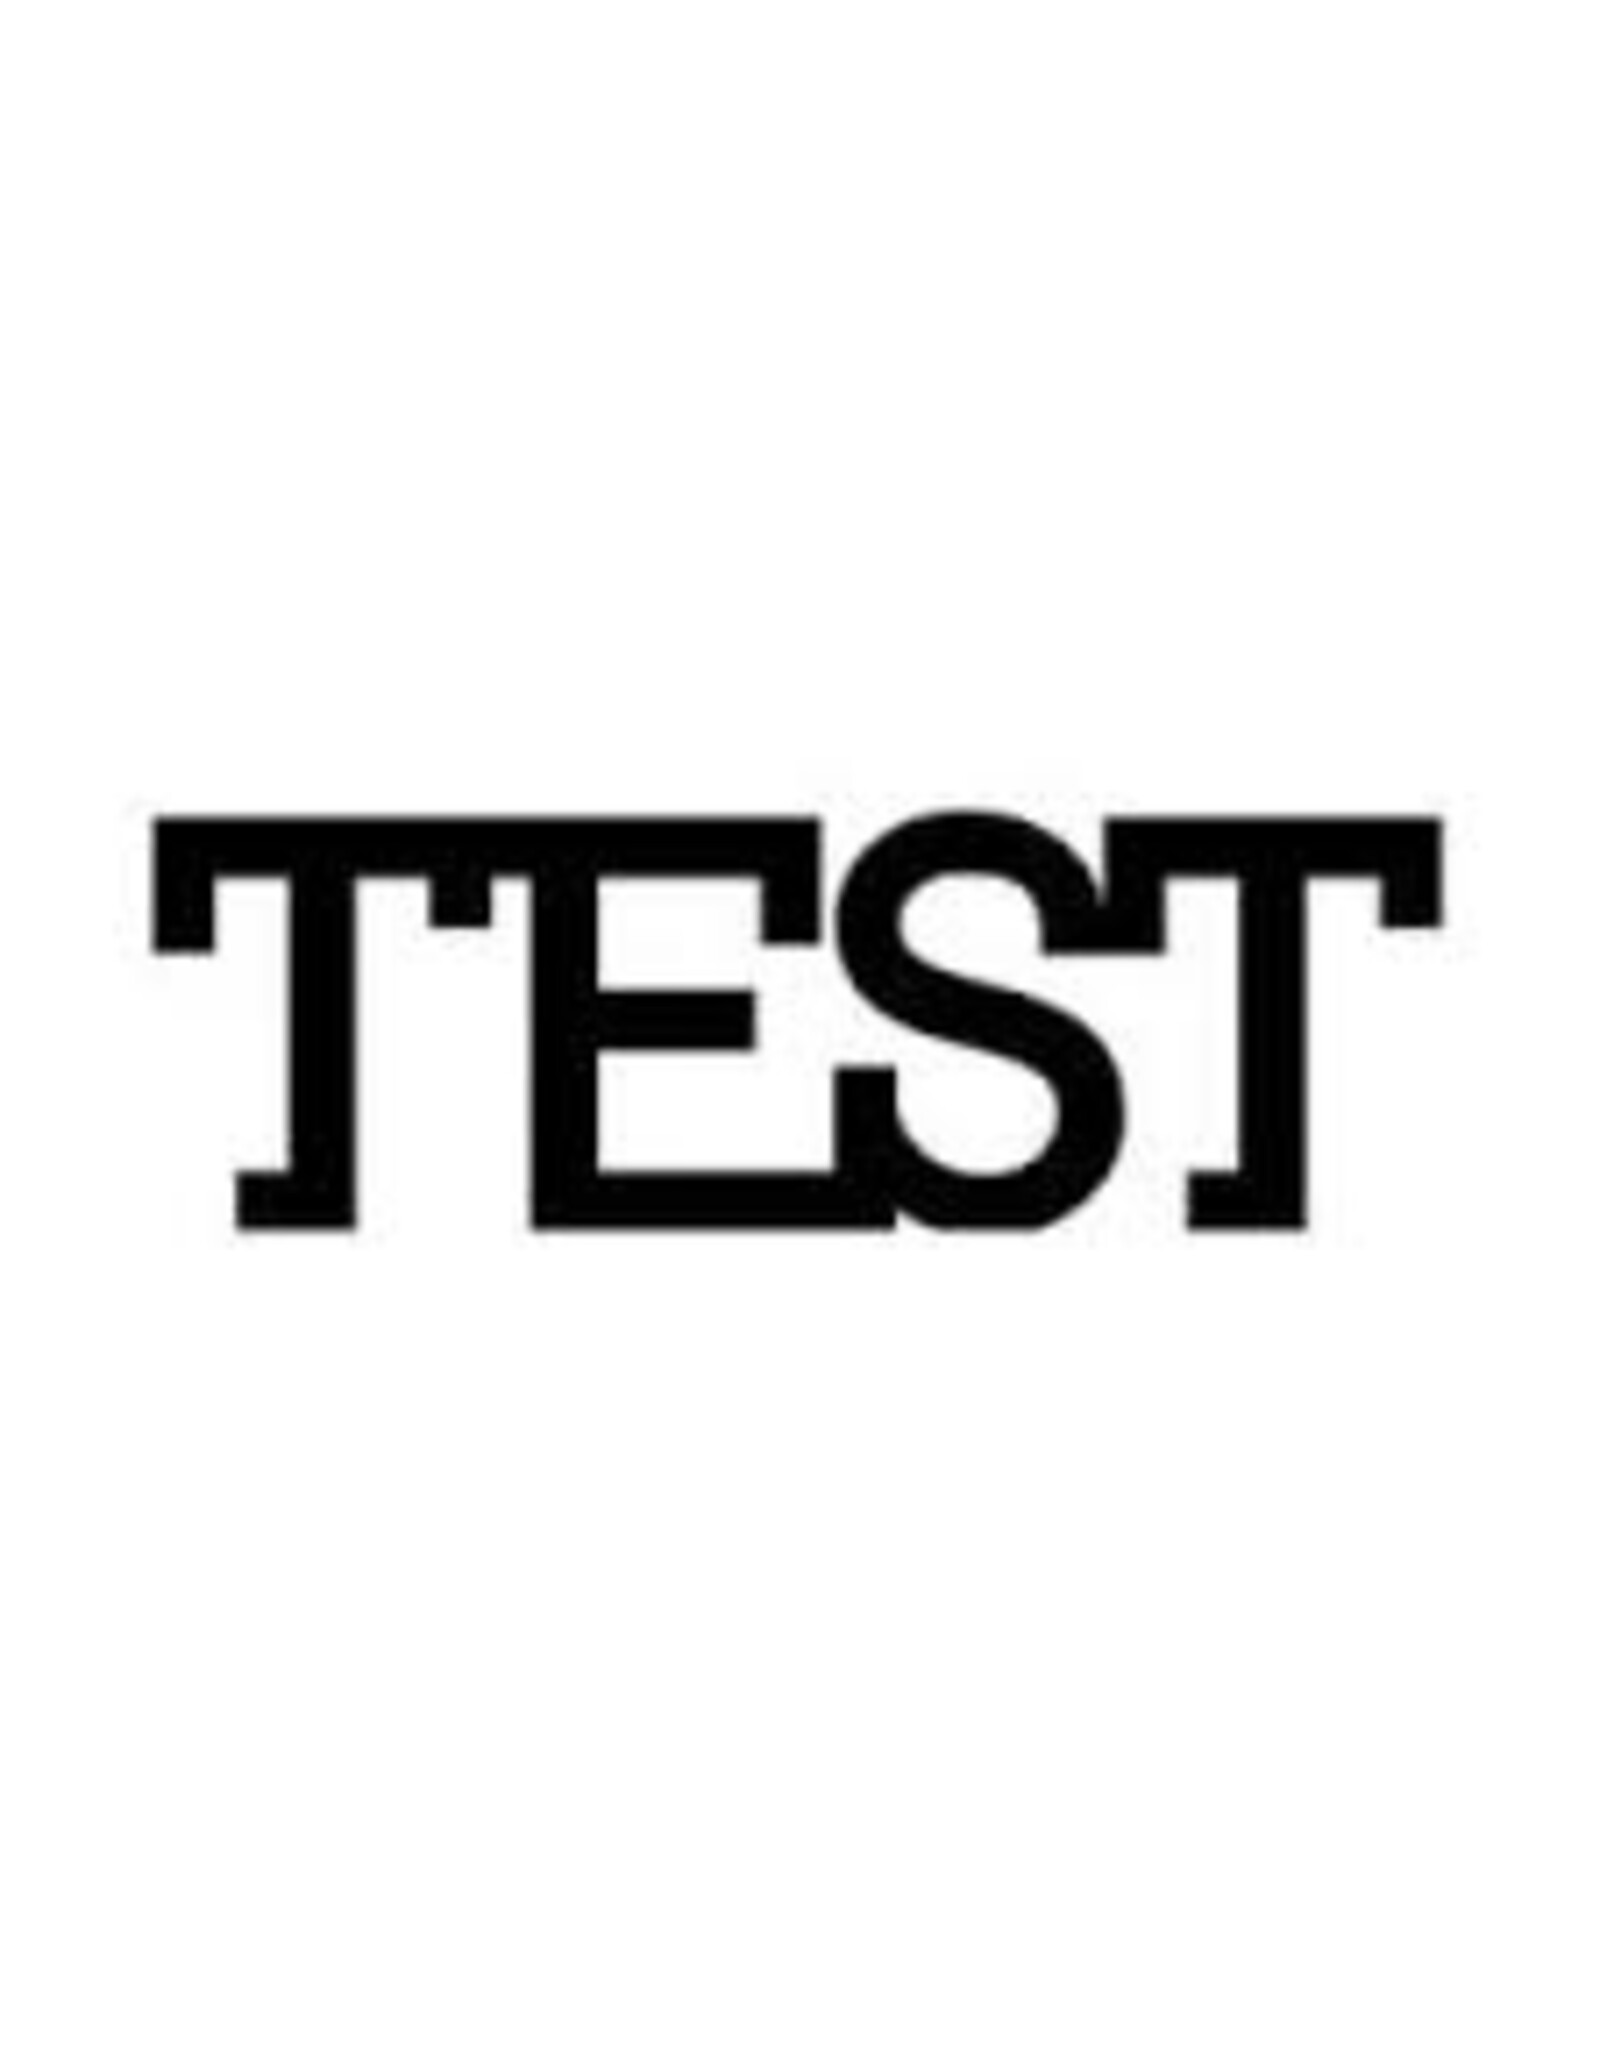 Test merk Test lange titel NL